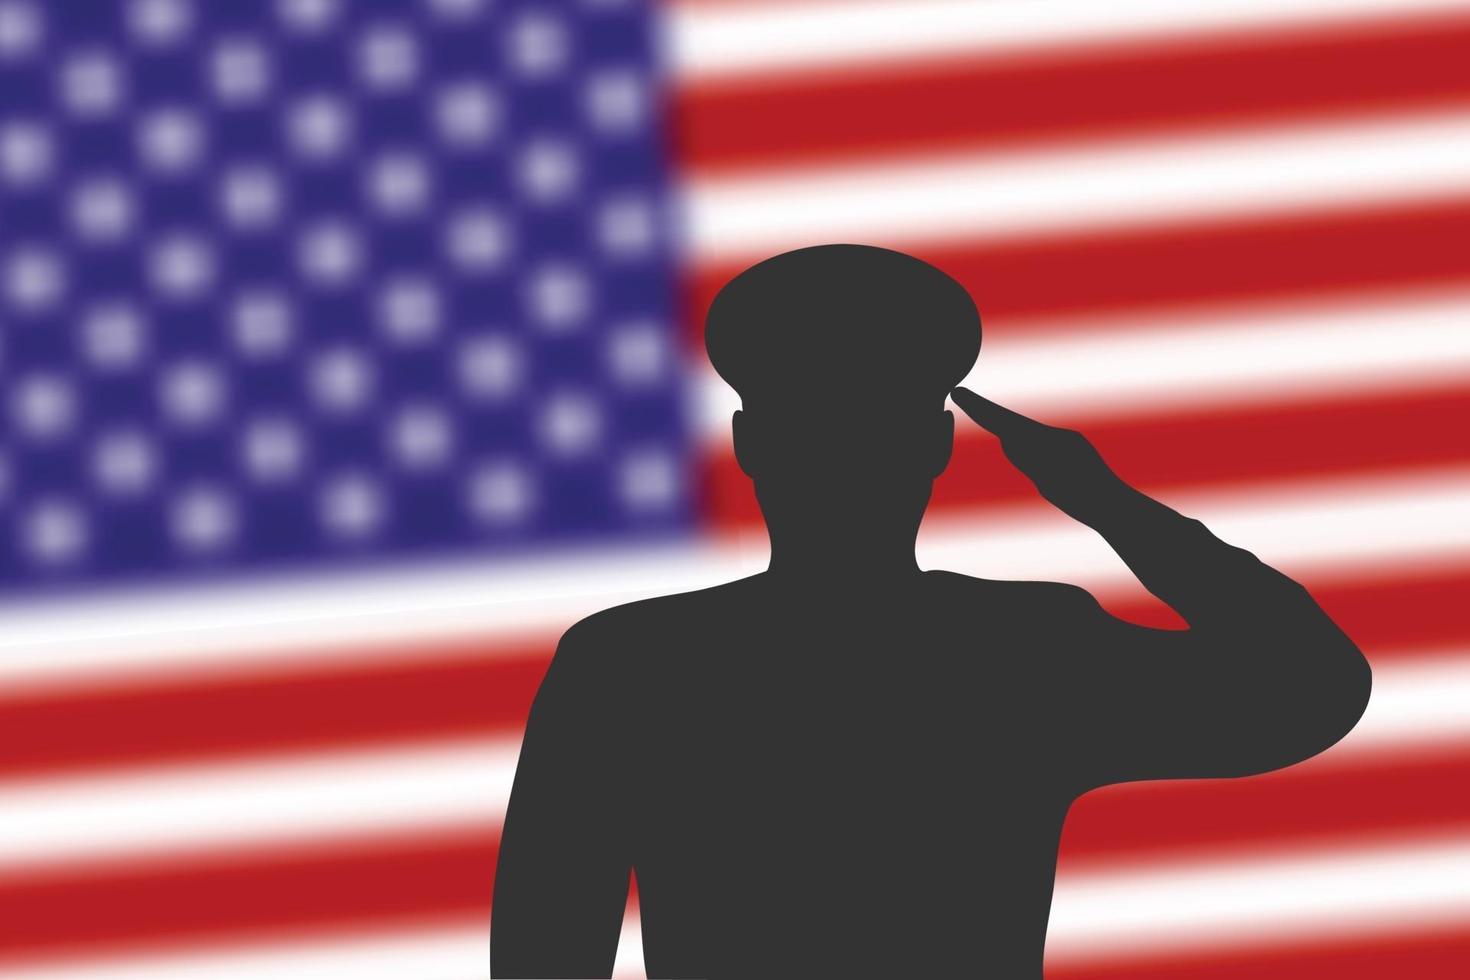 Lötsilhouette auf unscharfem Hintergrund mit Flagge der Vereinigten Staaten. vektor